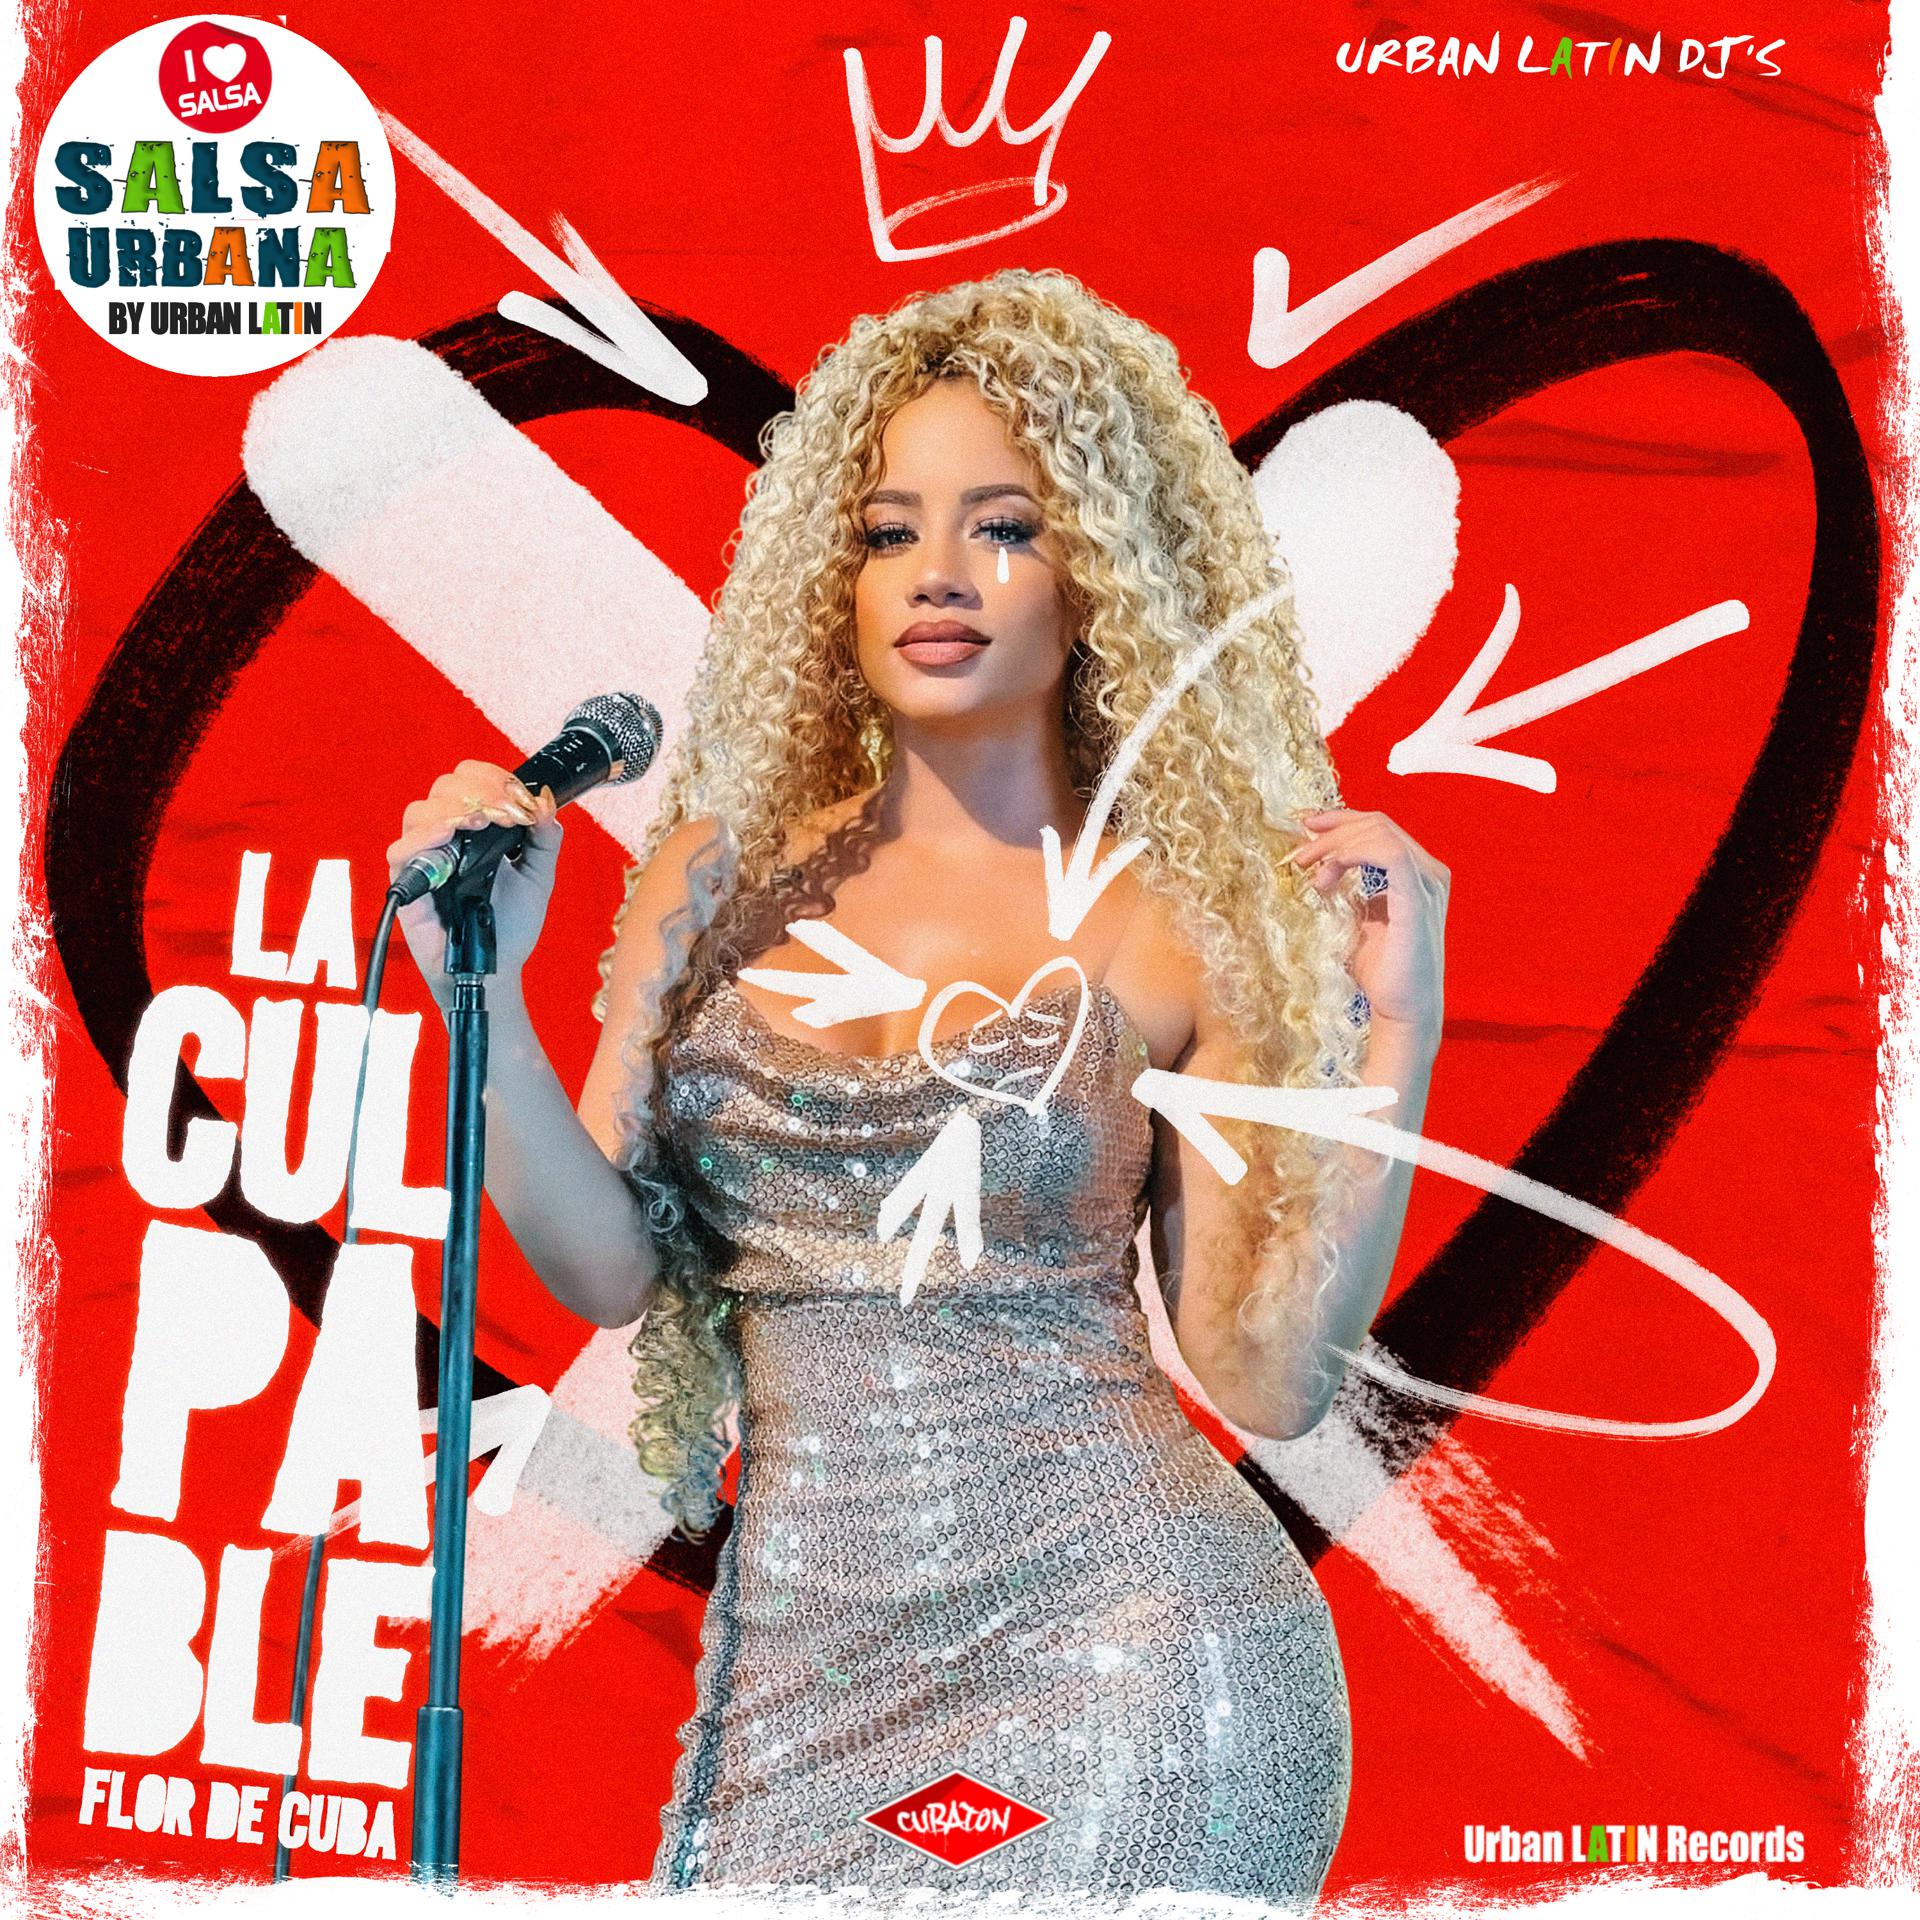 Постер альбома La Culpable